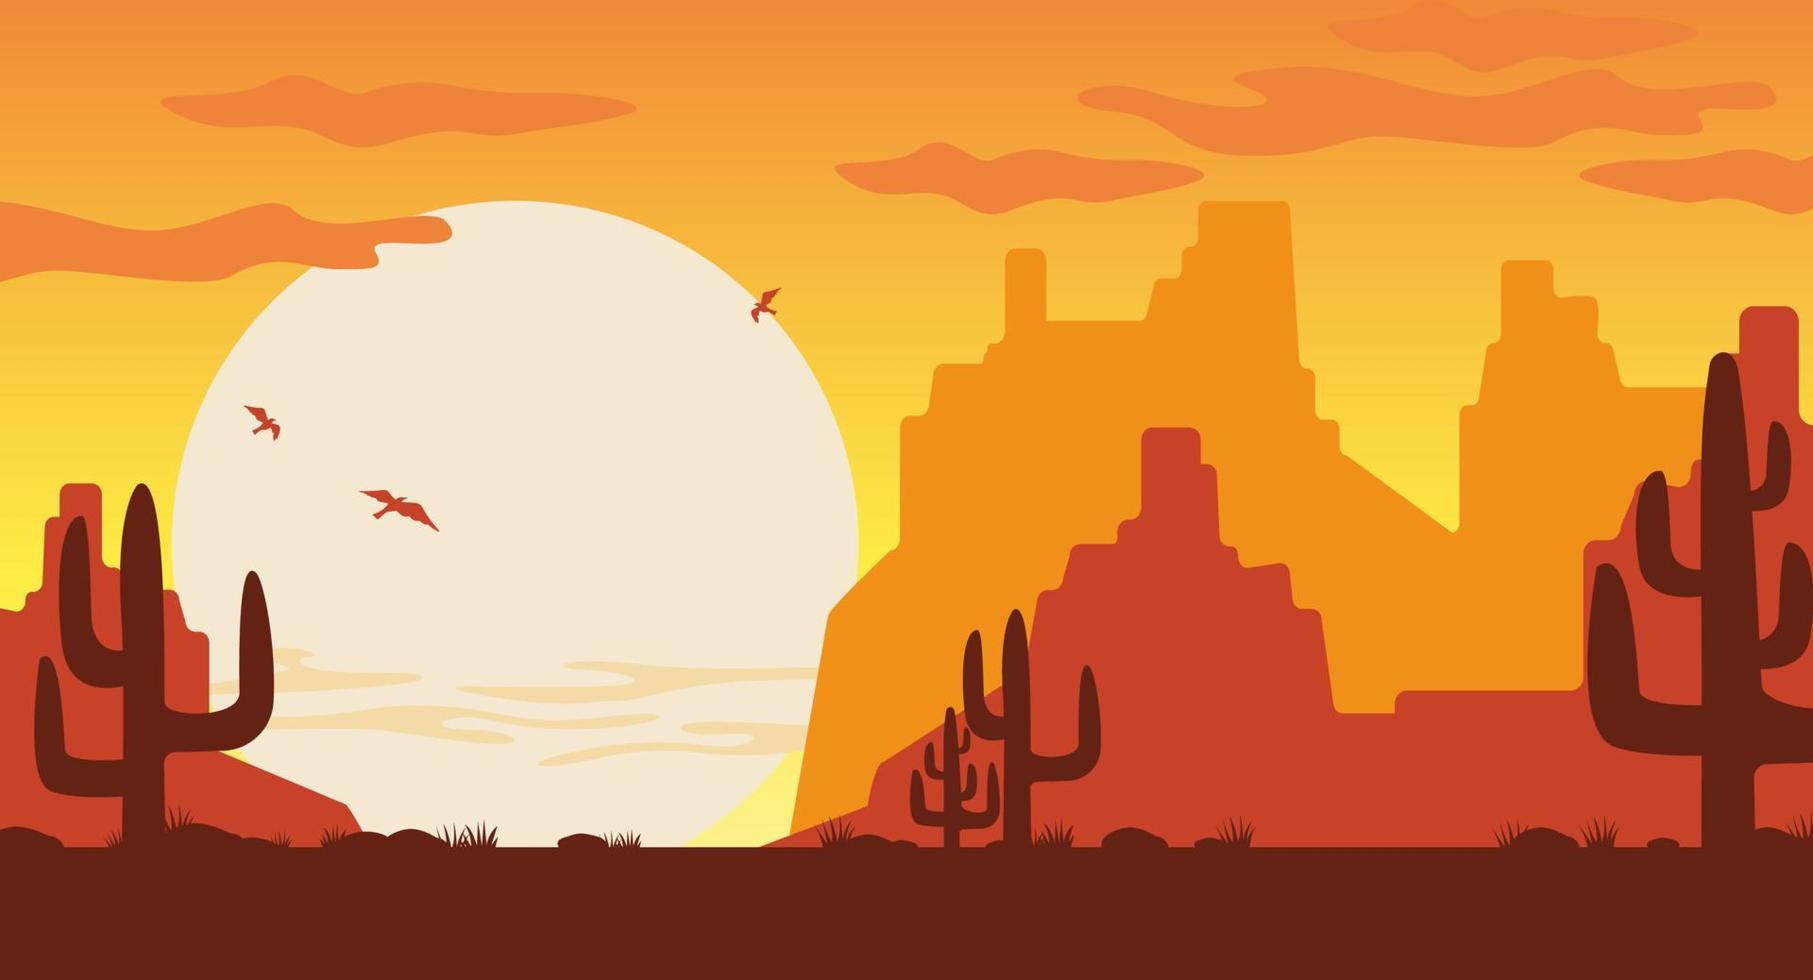 oeste selvagem na ilustração do pôr do sol. silhuetas laranja de cactos marrons das montanhas do arizona. vetor